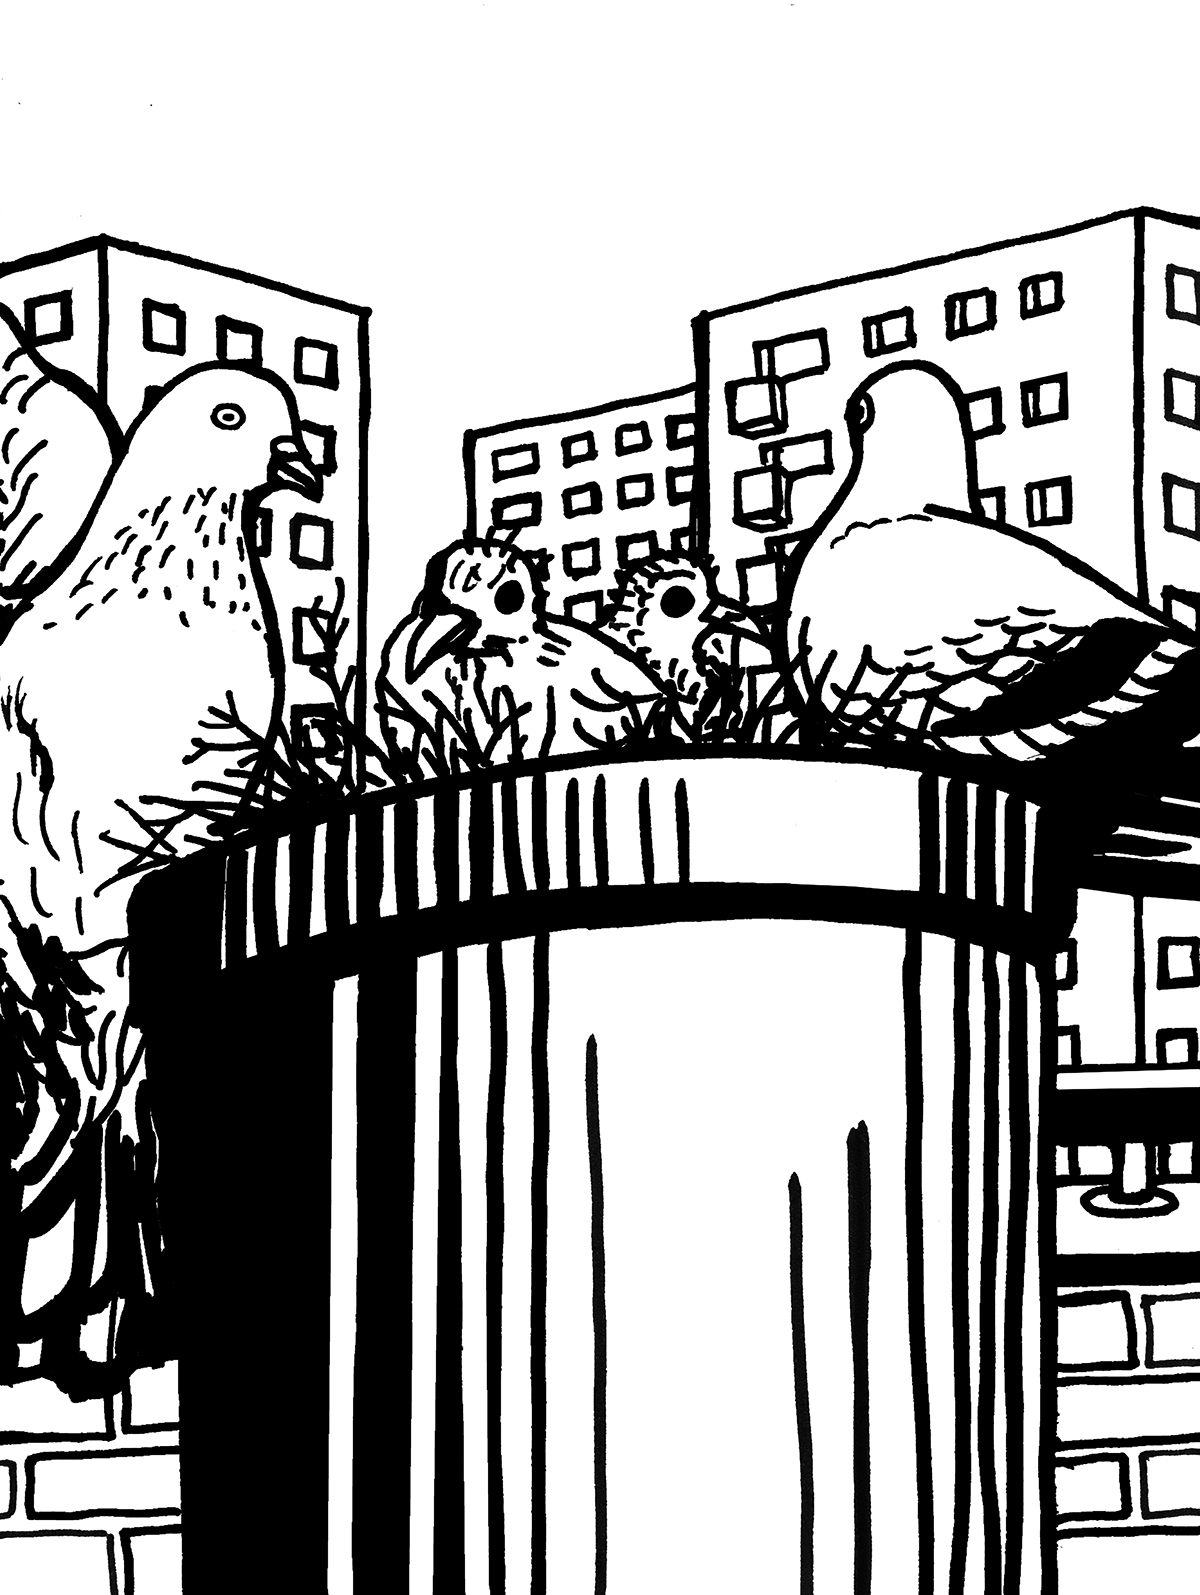 Dwa nieopierzone pisklęta siedzą w gnieździe uwitym w balkonowej doniczce, otoczone przez swoich gołębich rodziców. W tle bloki mieszkalne.